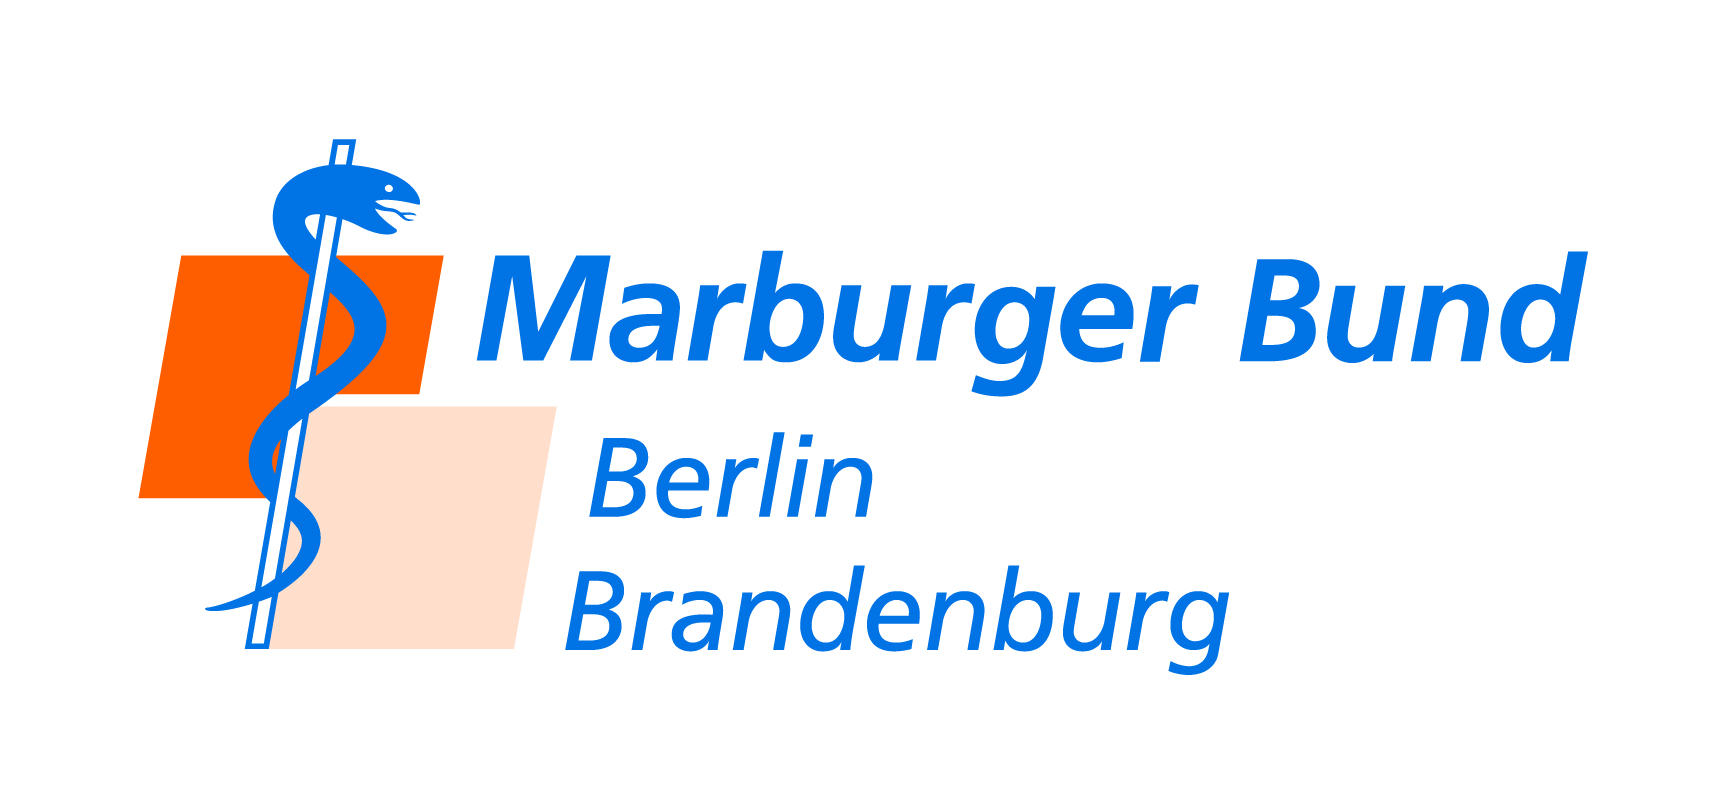 Marburger Bund Berlin/Brandenburg